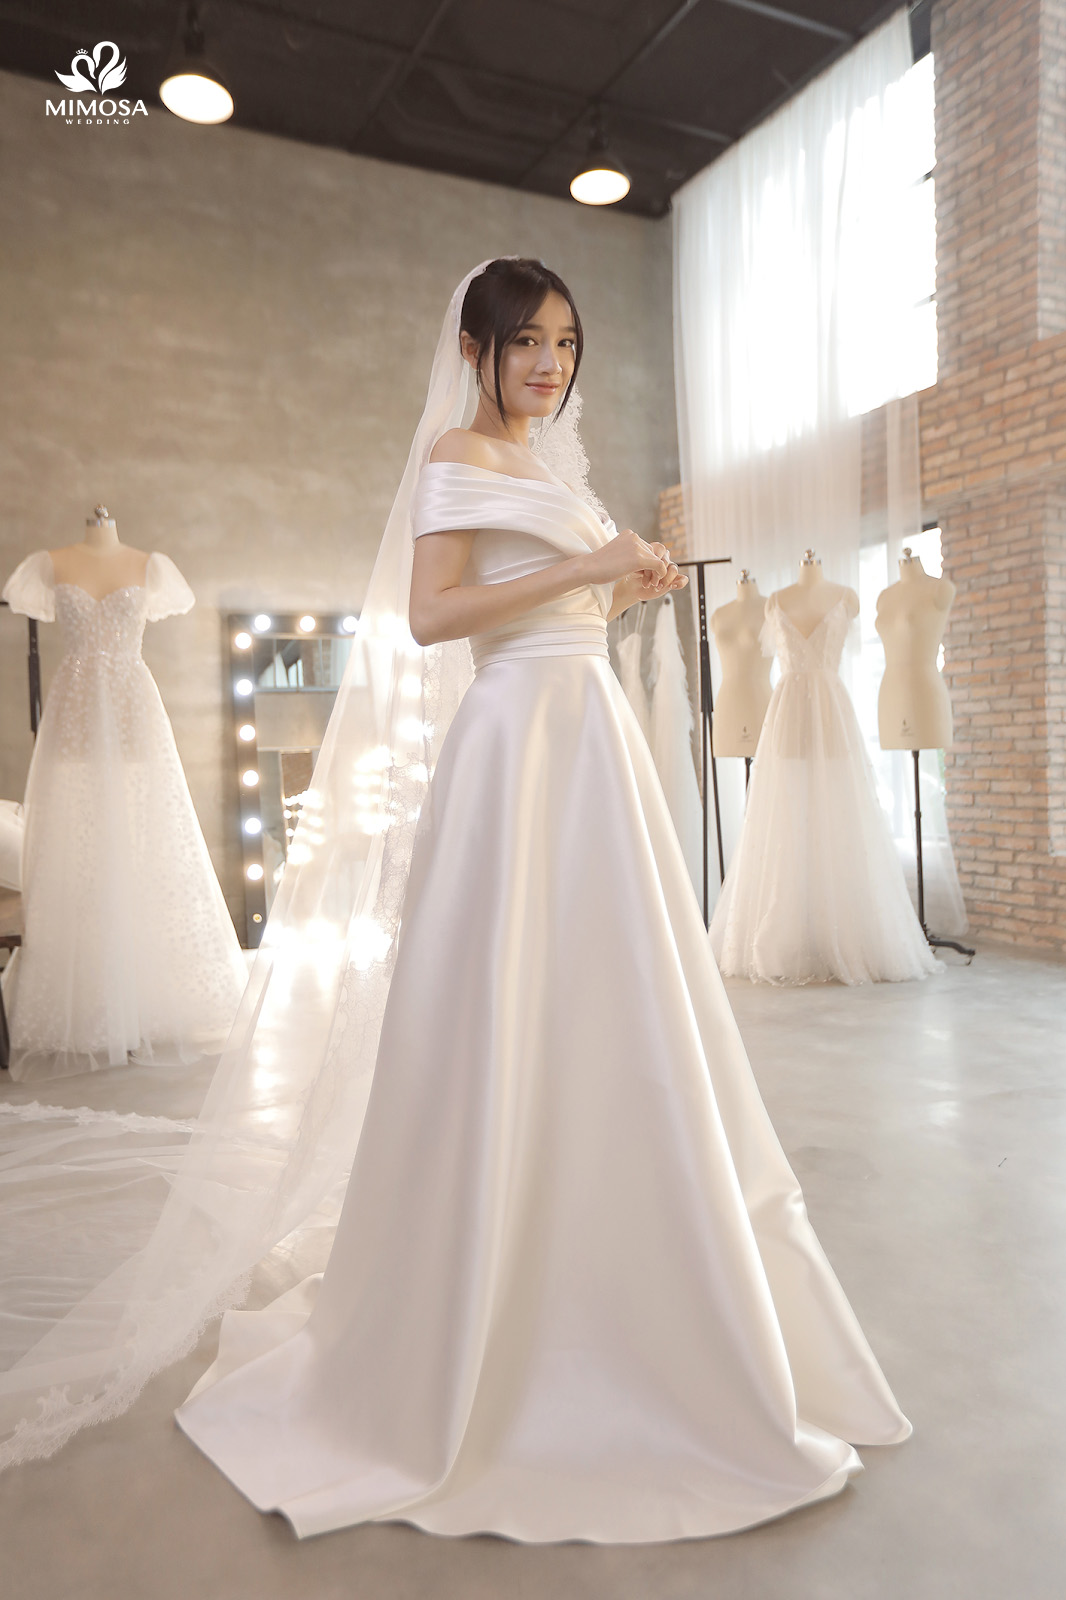 Váy cưới đẹp như cổ tích của Đông Nhi 2 chiếc đầu tiên đã đẹp mỹ mãn khó  rời mắt